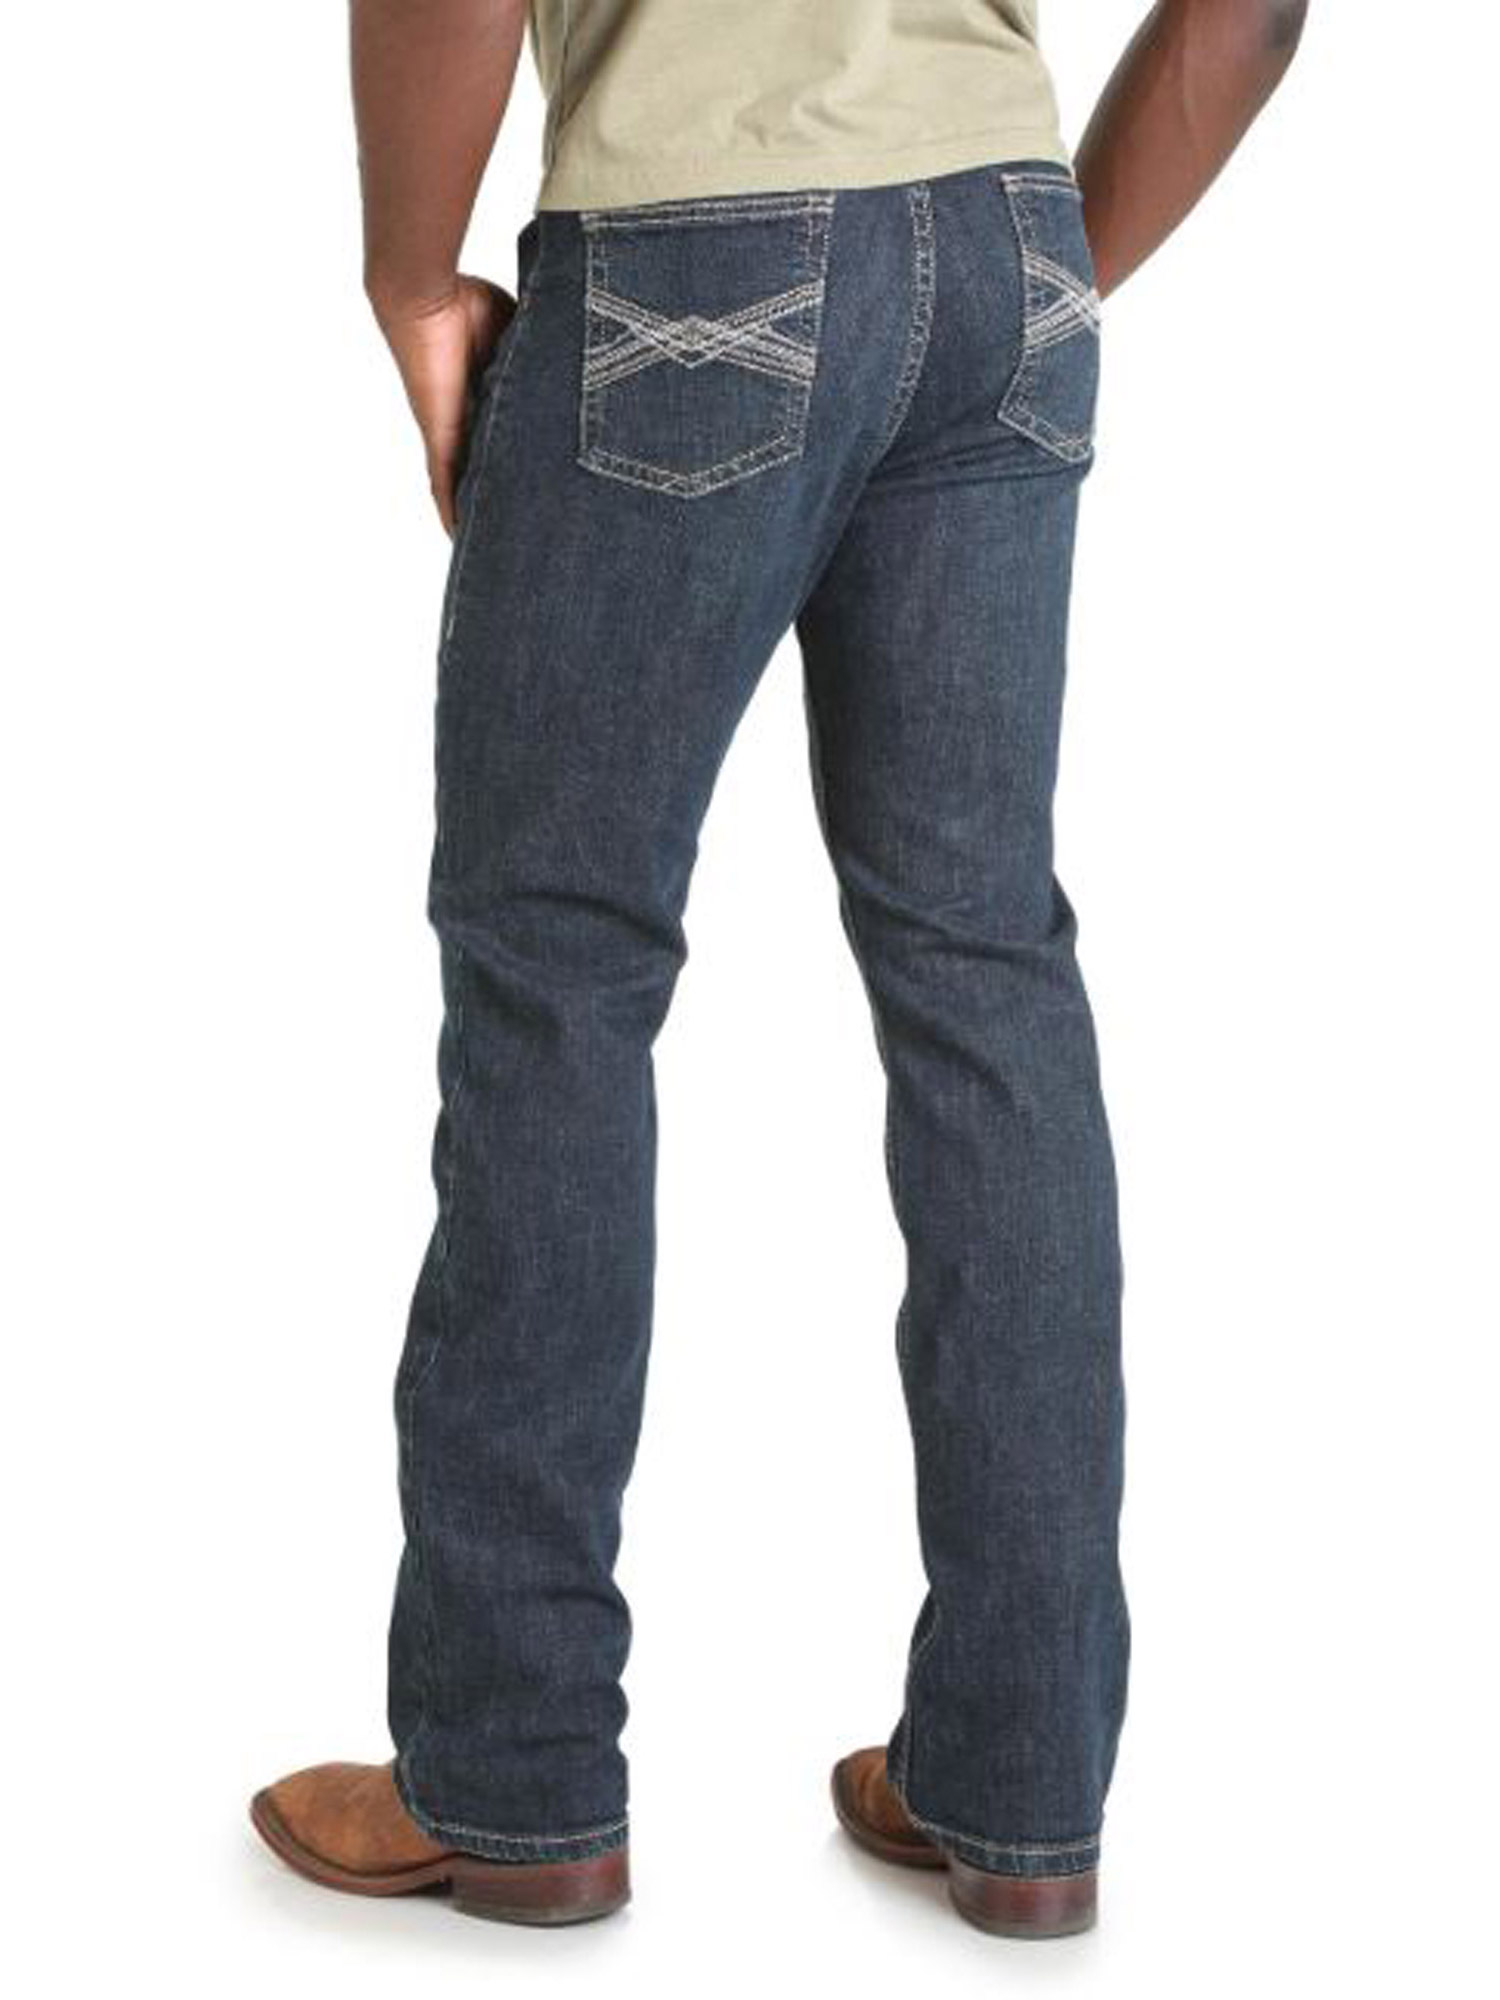 Wrangler 20X Vintage Boot Cut Plains Jeans 34W x 32L 